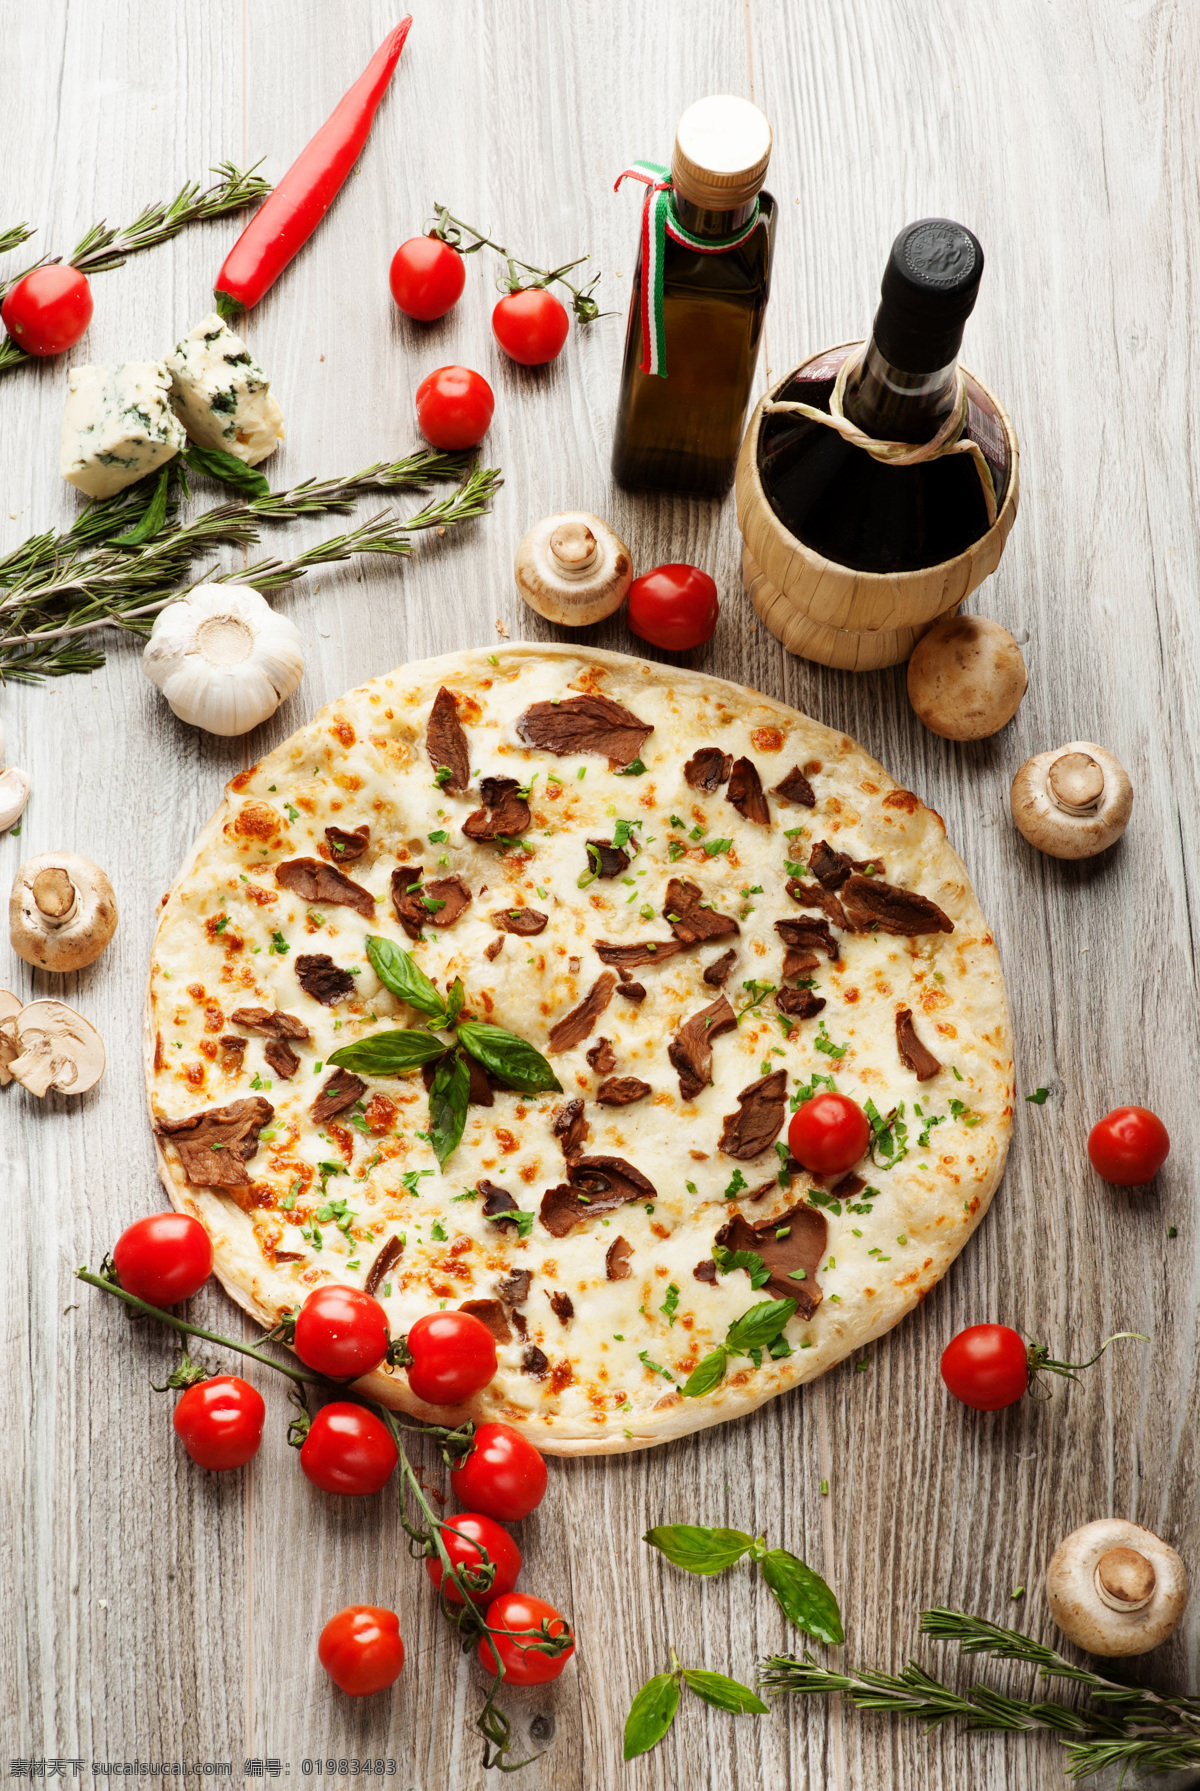 香菇 番茄 披萨 意大利披萨 美食 美味 食物 西餐美食 餐饮美食 白色